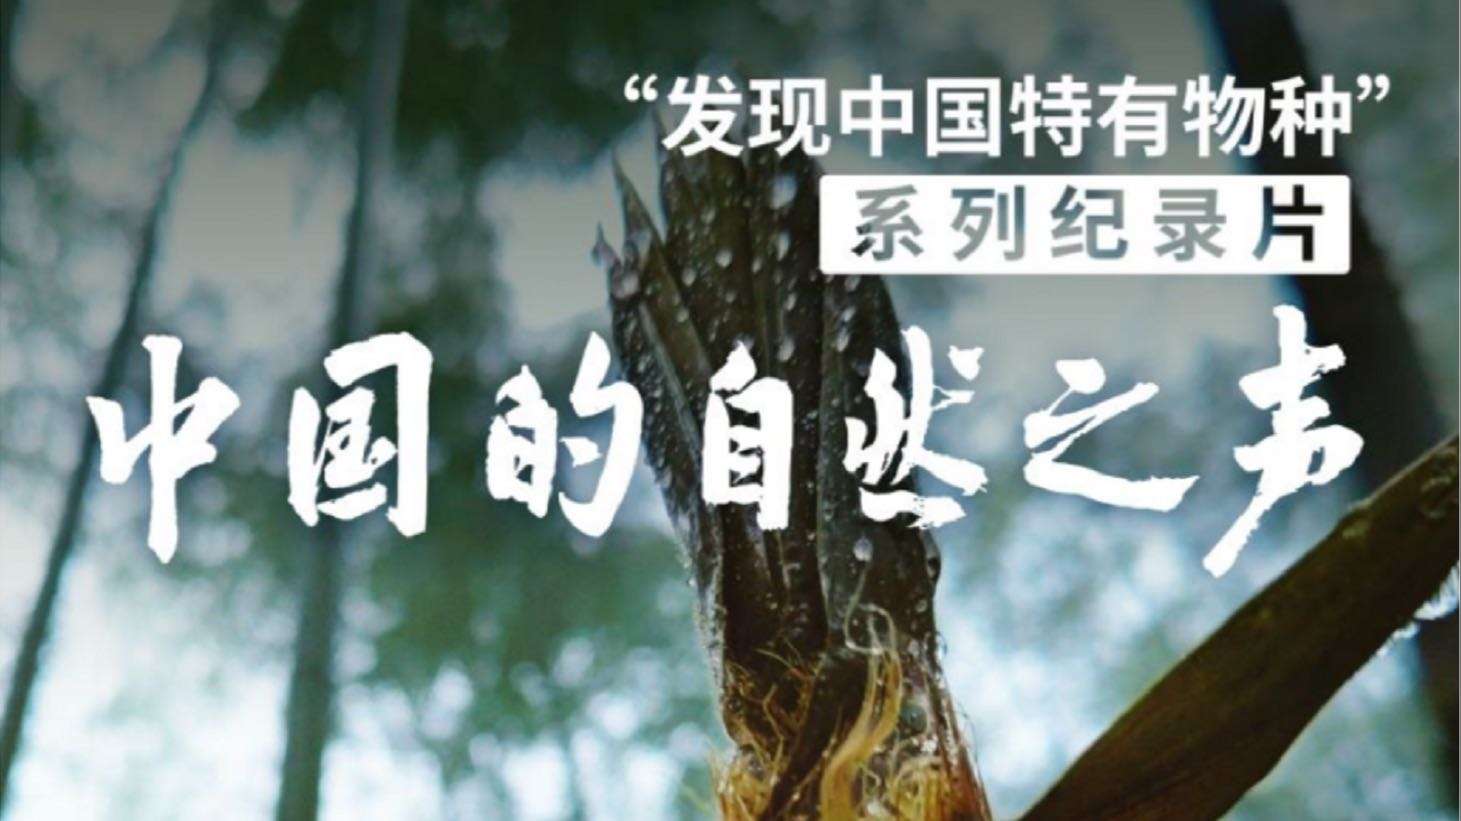 《中国的自然之声-竹之声》 手机拍摄自然类纪录片